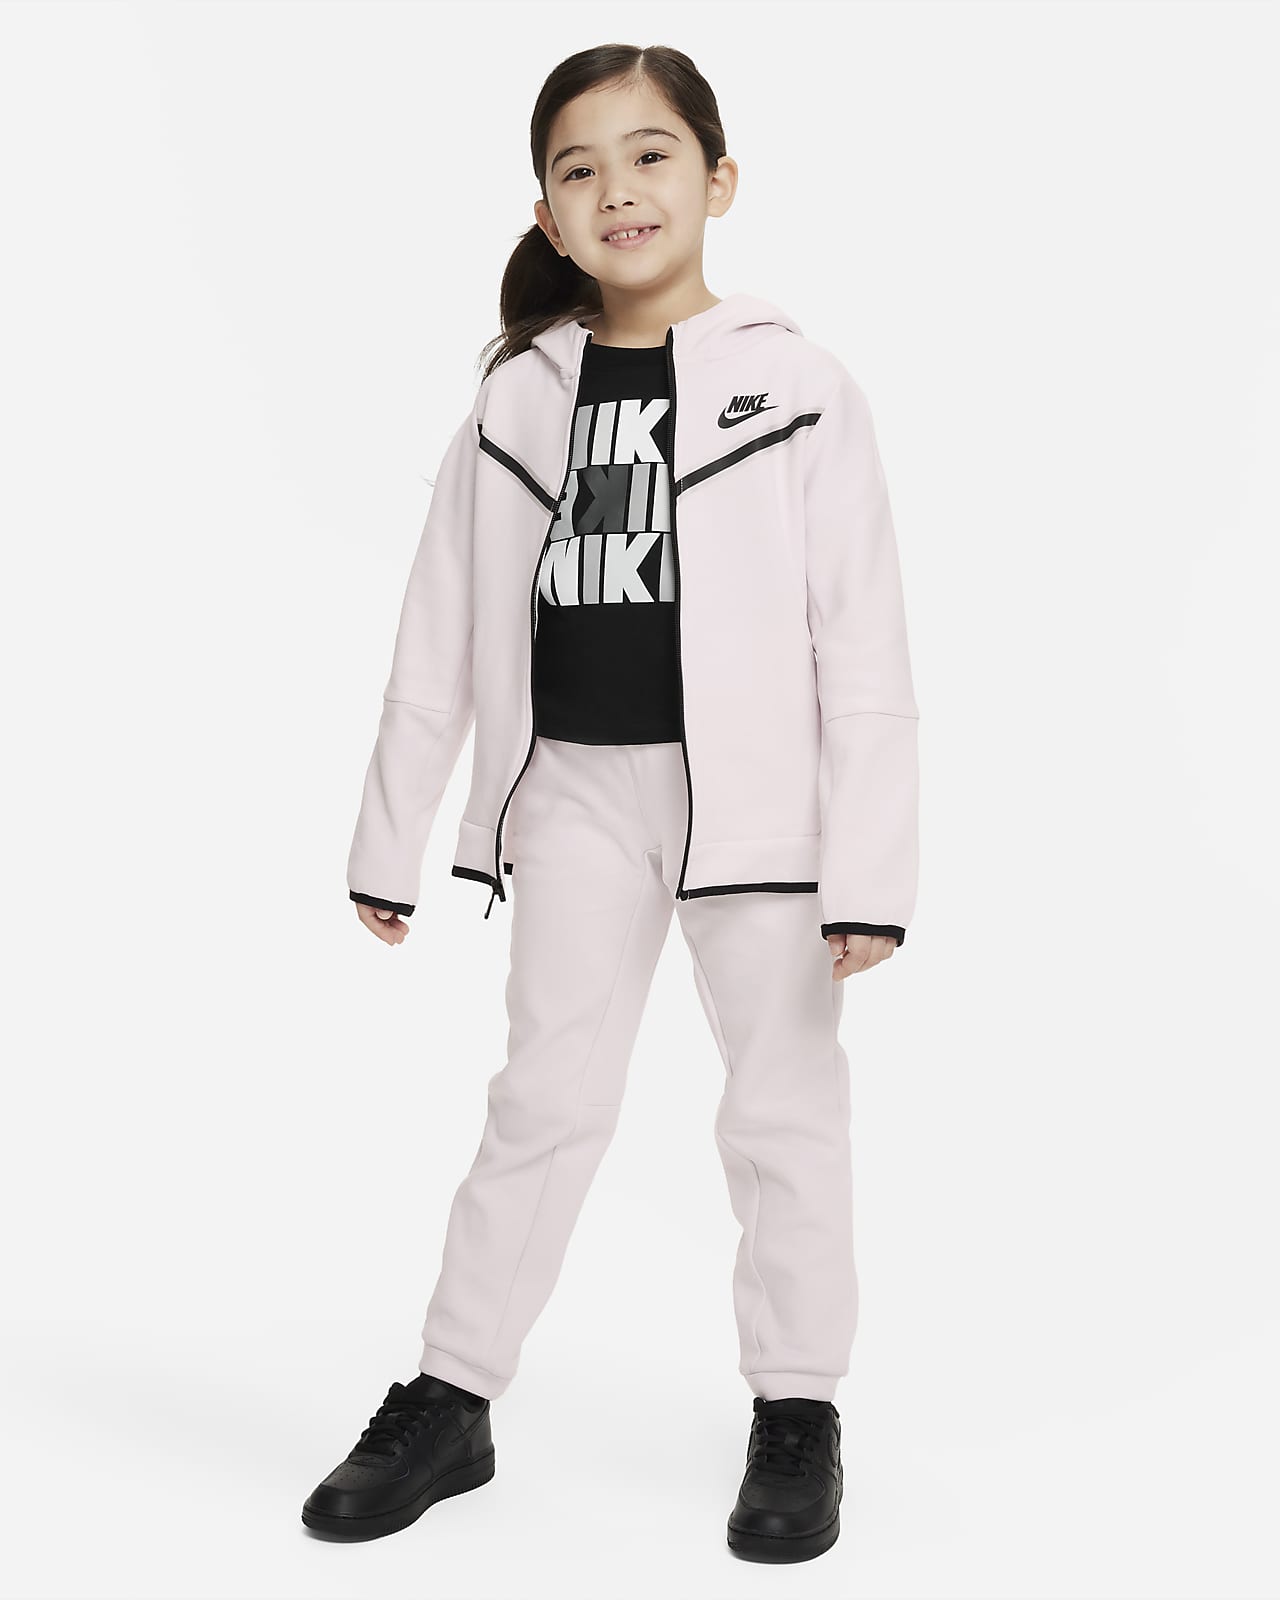 gijzelaar stapel radiator Nike Sportswear Tech Fleece Younger Kids' Jacket and Trousers Set. Nike SE